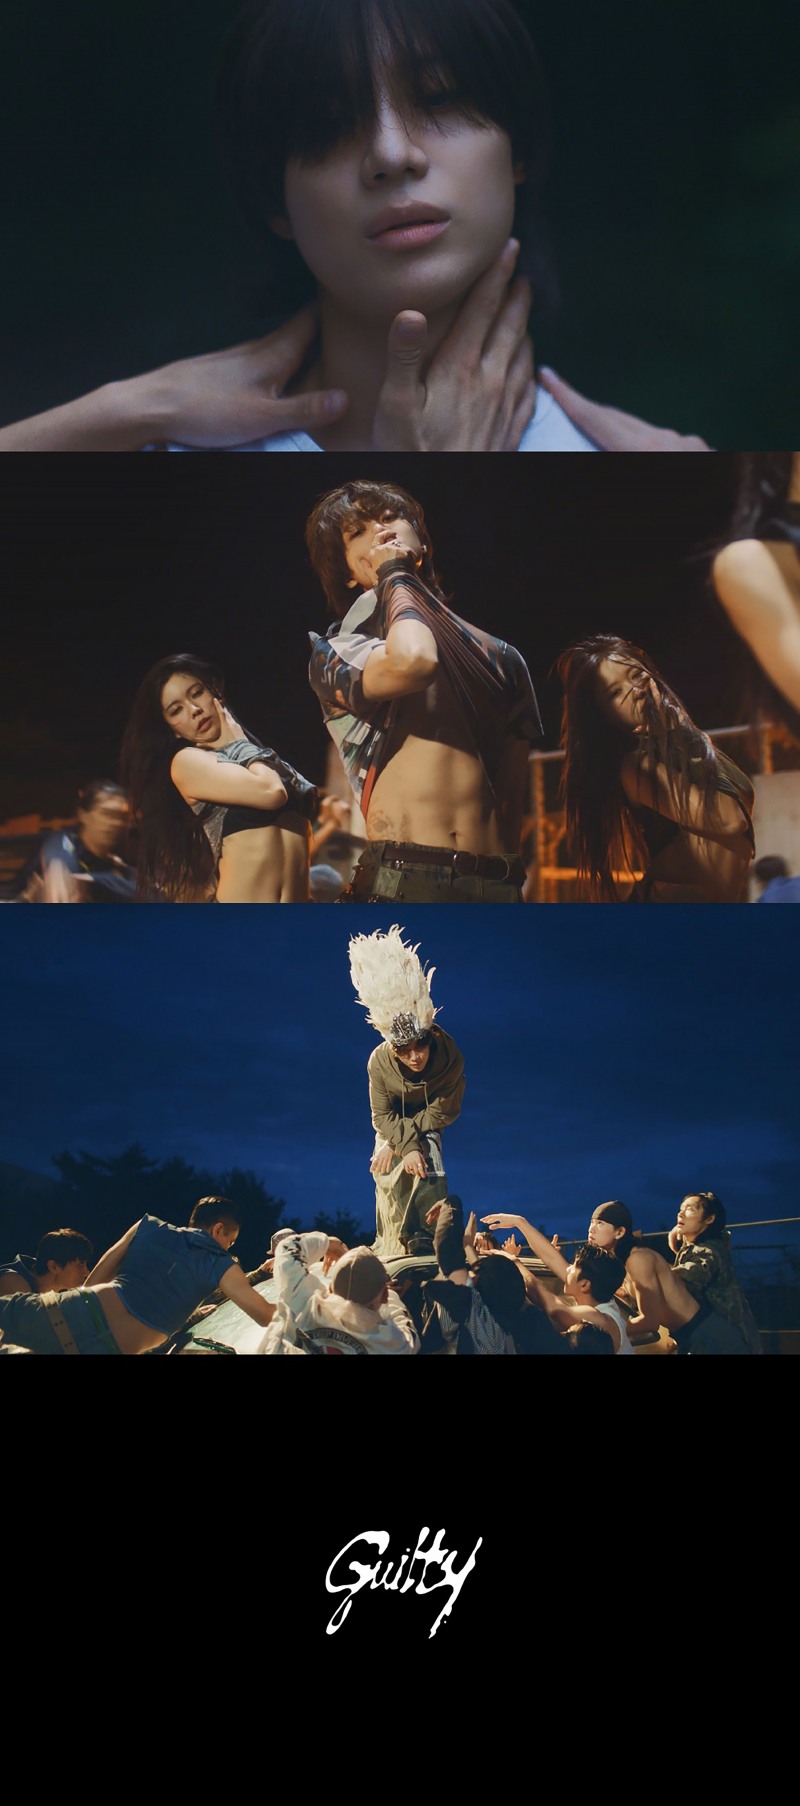 샤이니 태민, 신곡 ‘Guilty’ 두 번째 뮤직비디오 티저 오픈…‘영화 같은 스토리+화려한 퍼포먼스’